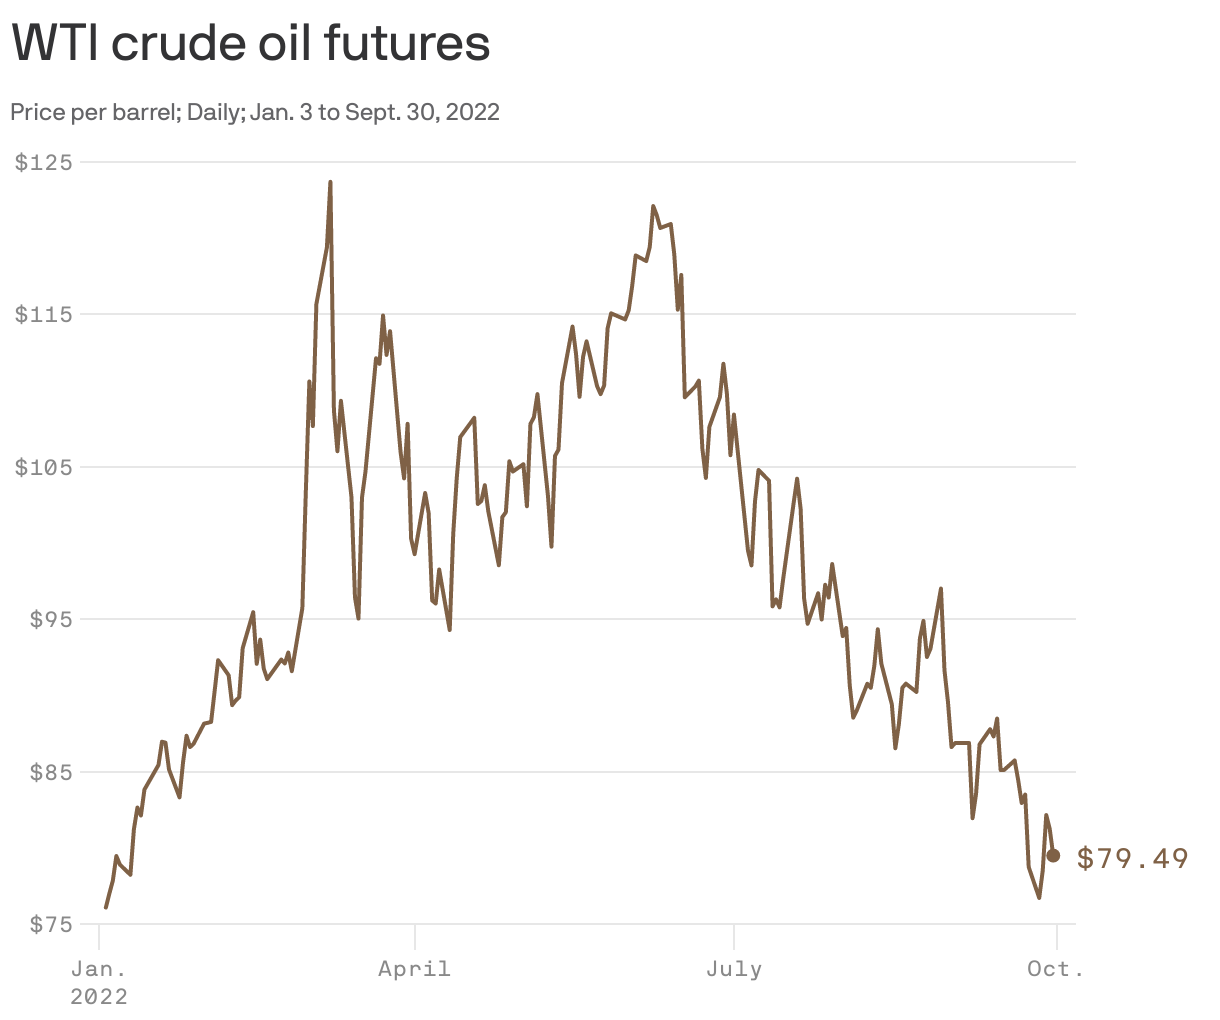 WTI crude oil futures